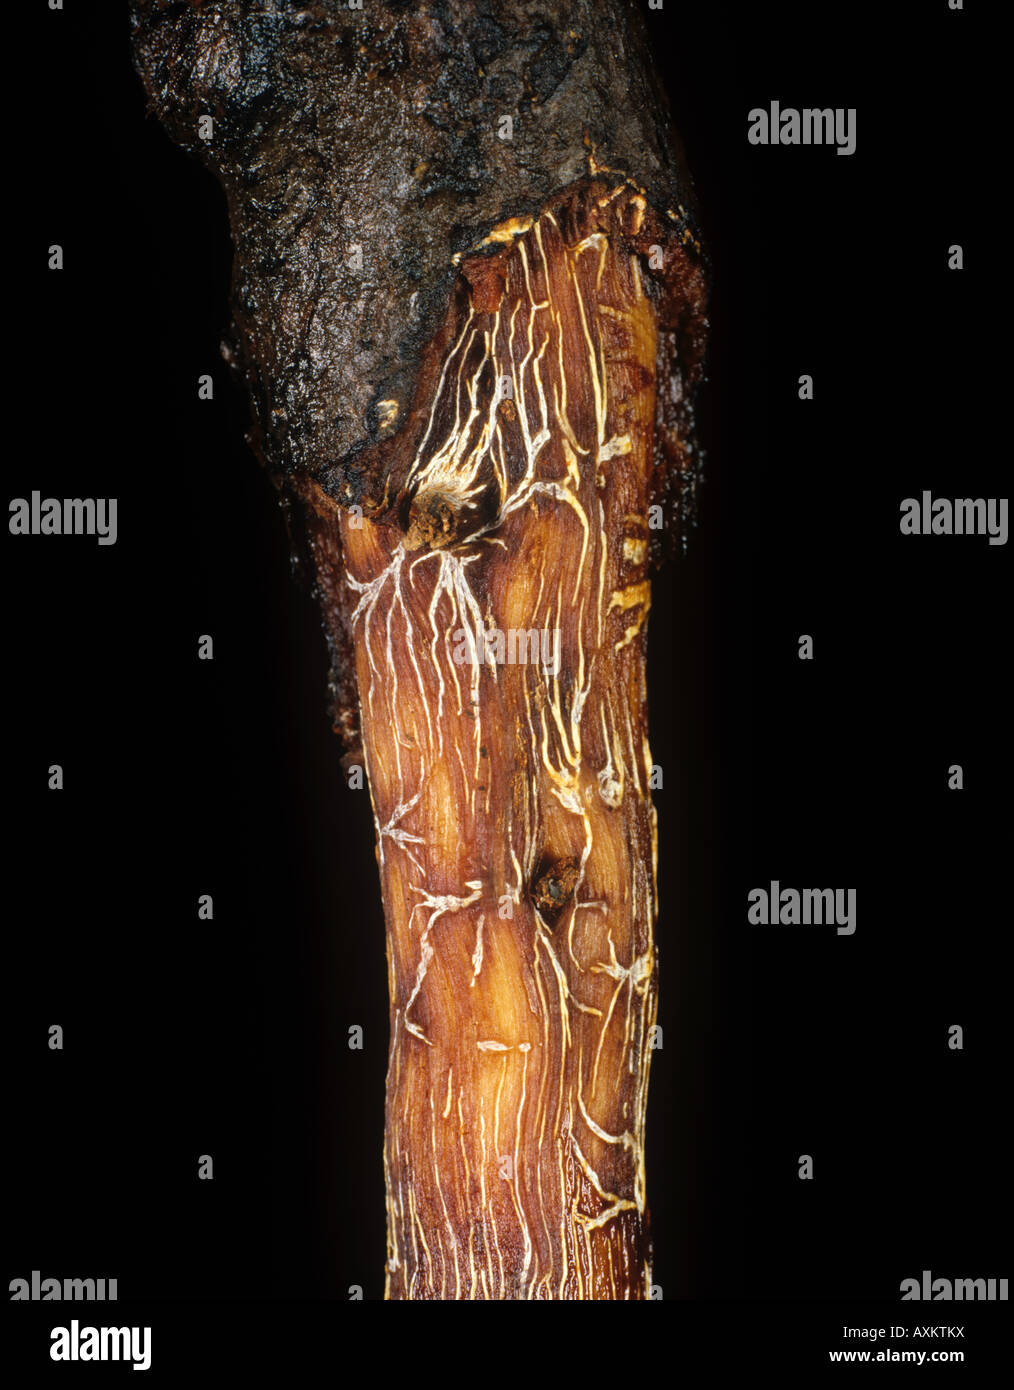 La podredumbre de la raíz negra Rosellinia pepo star micelio sobre cacao raíces Colombia Foto de stock